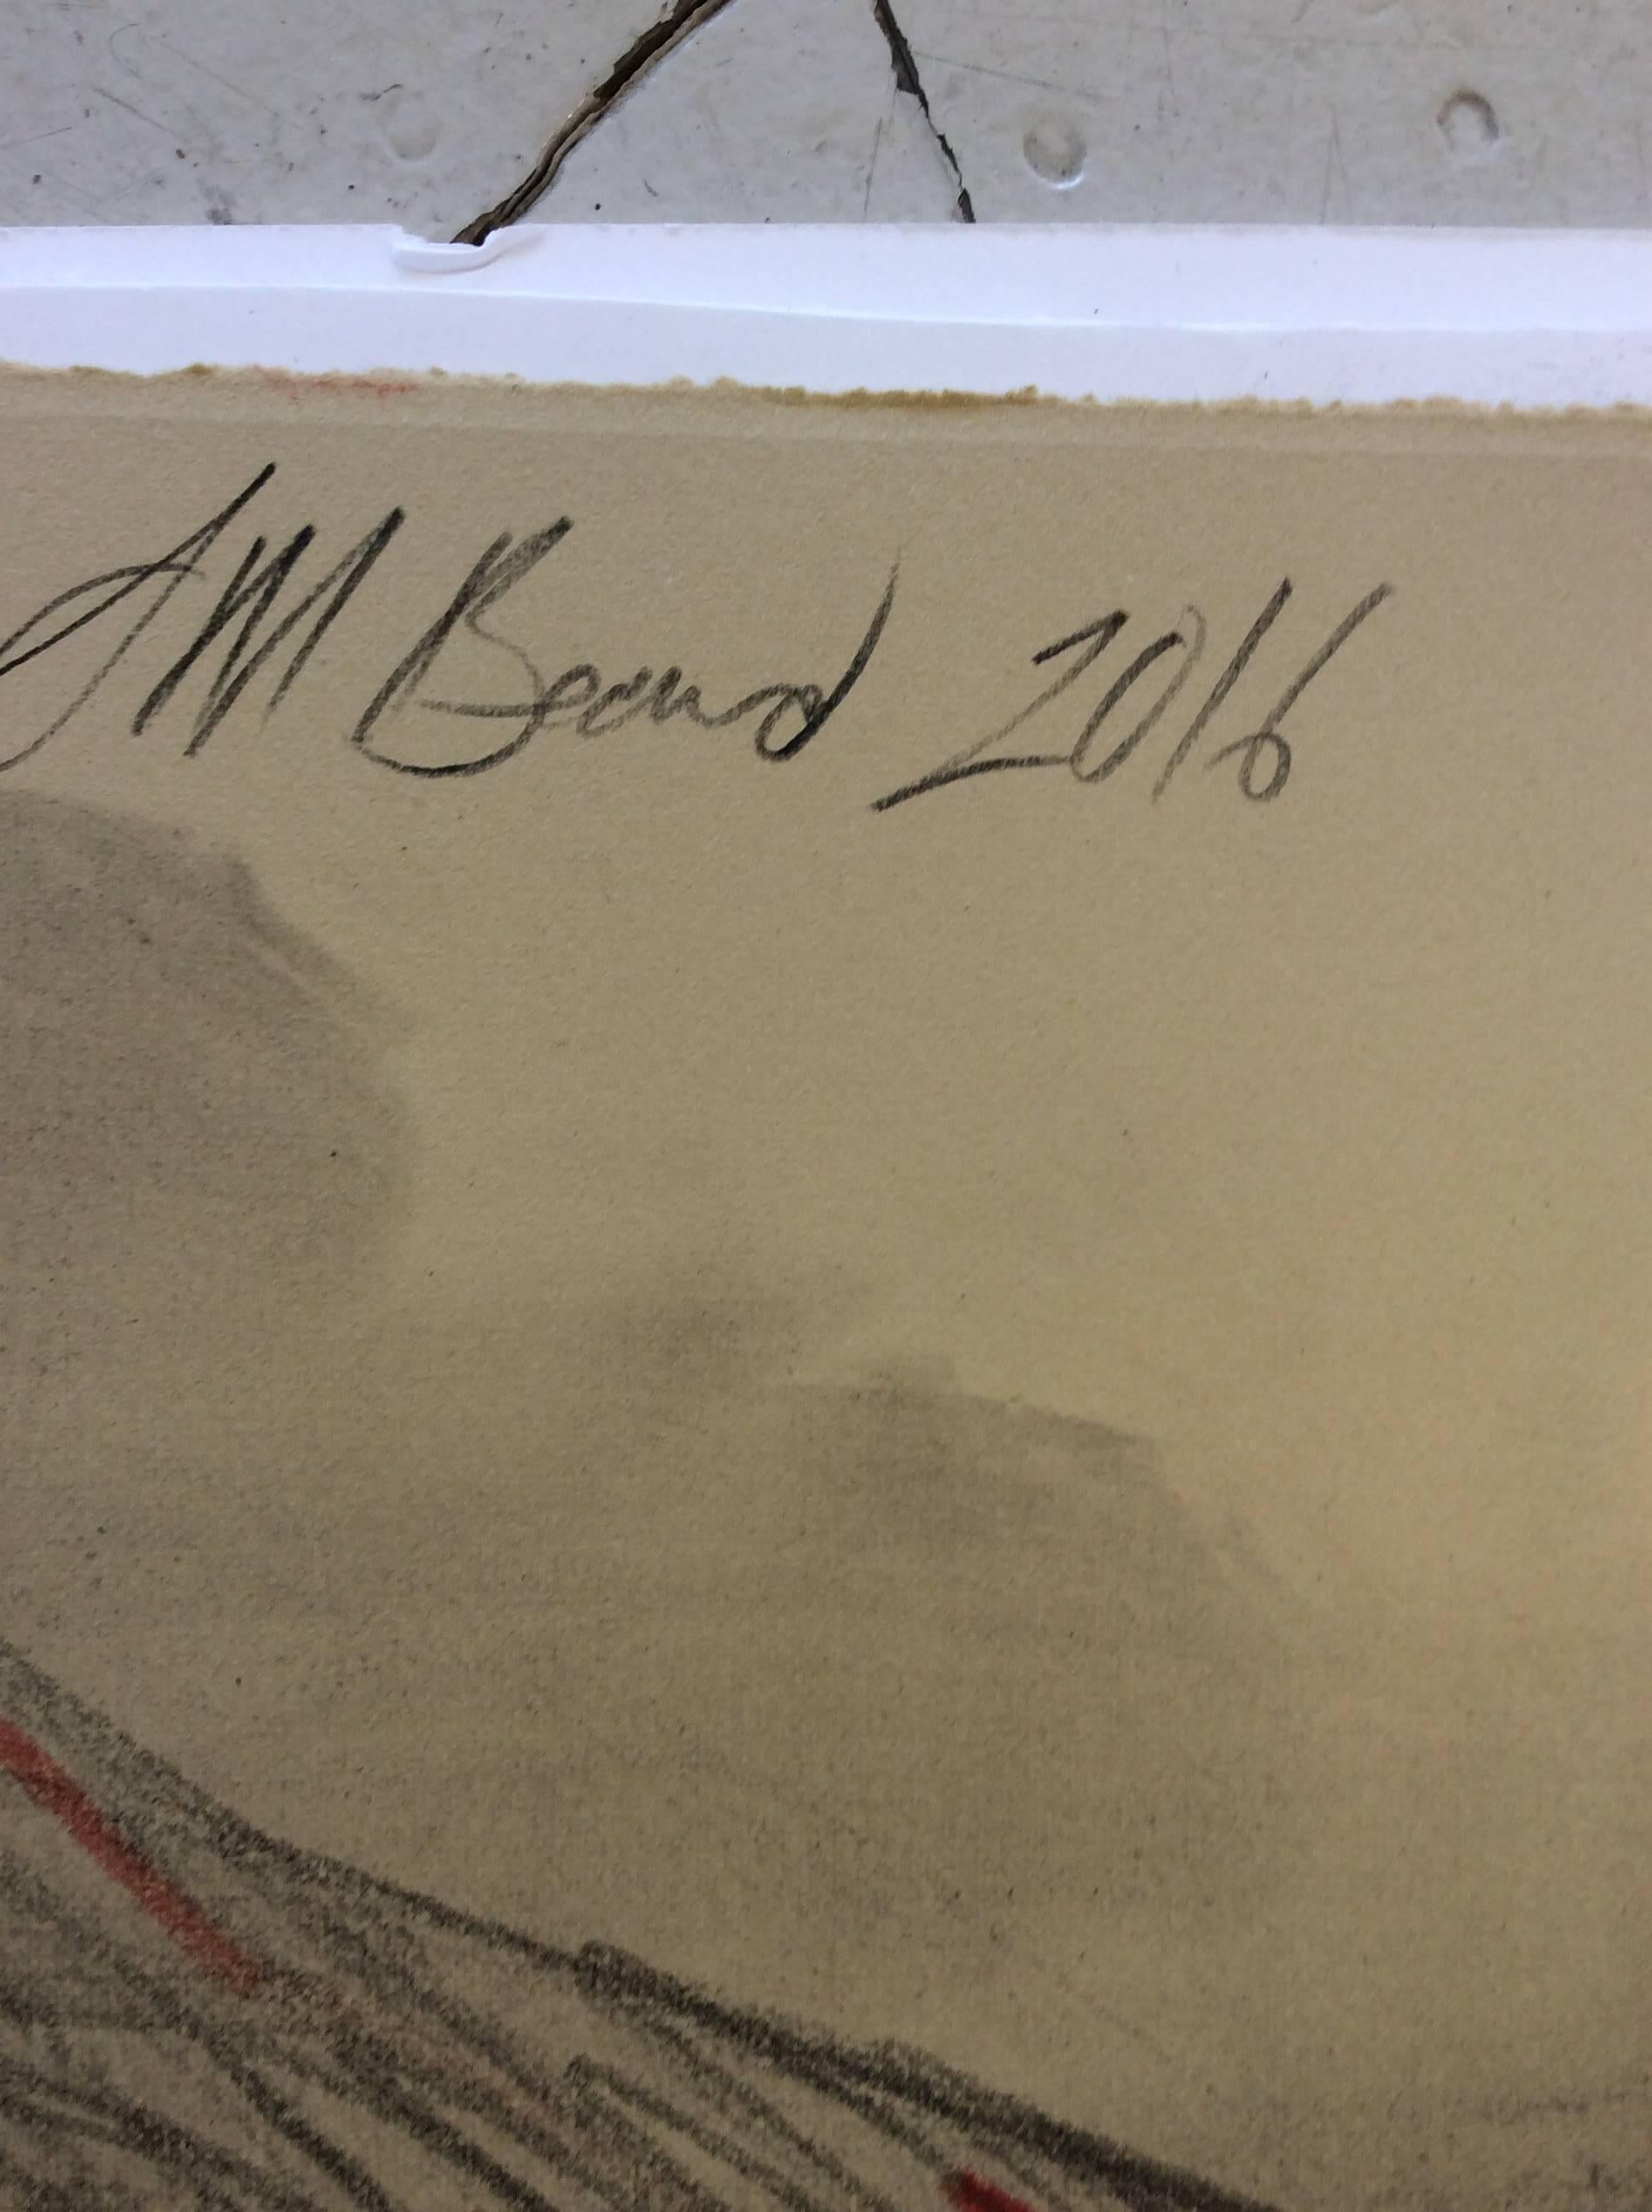 Motif figuratif au fusain sur papier de deux nus masculins assis MB 809 - Moderne Art par Mark Beard